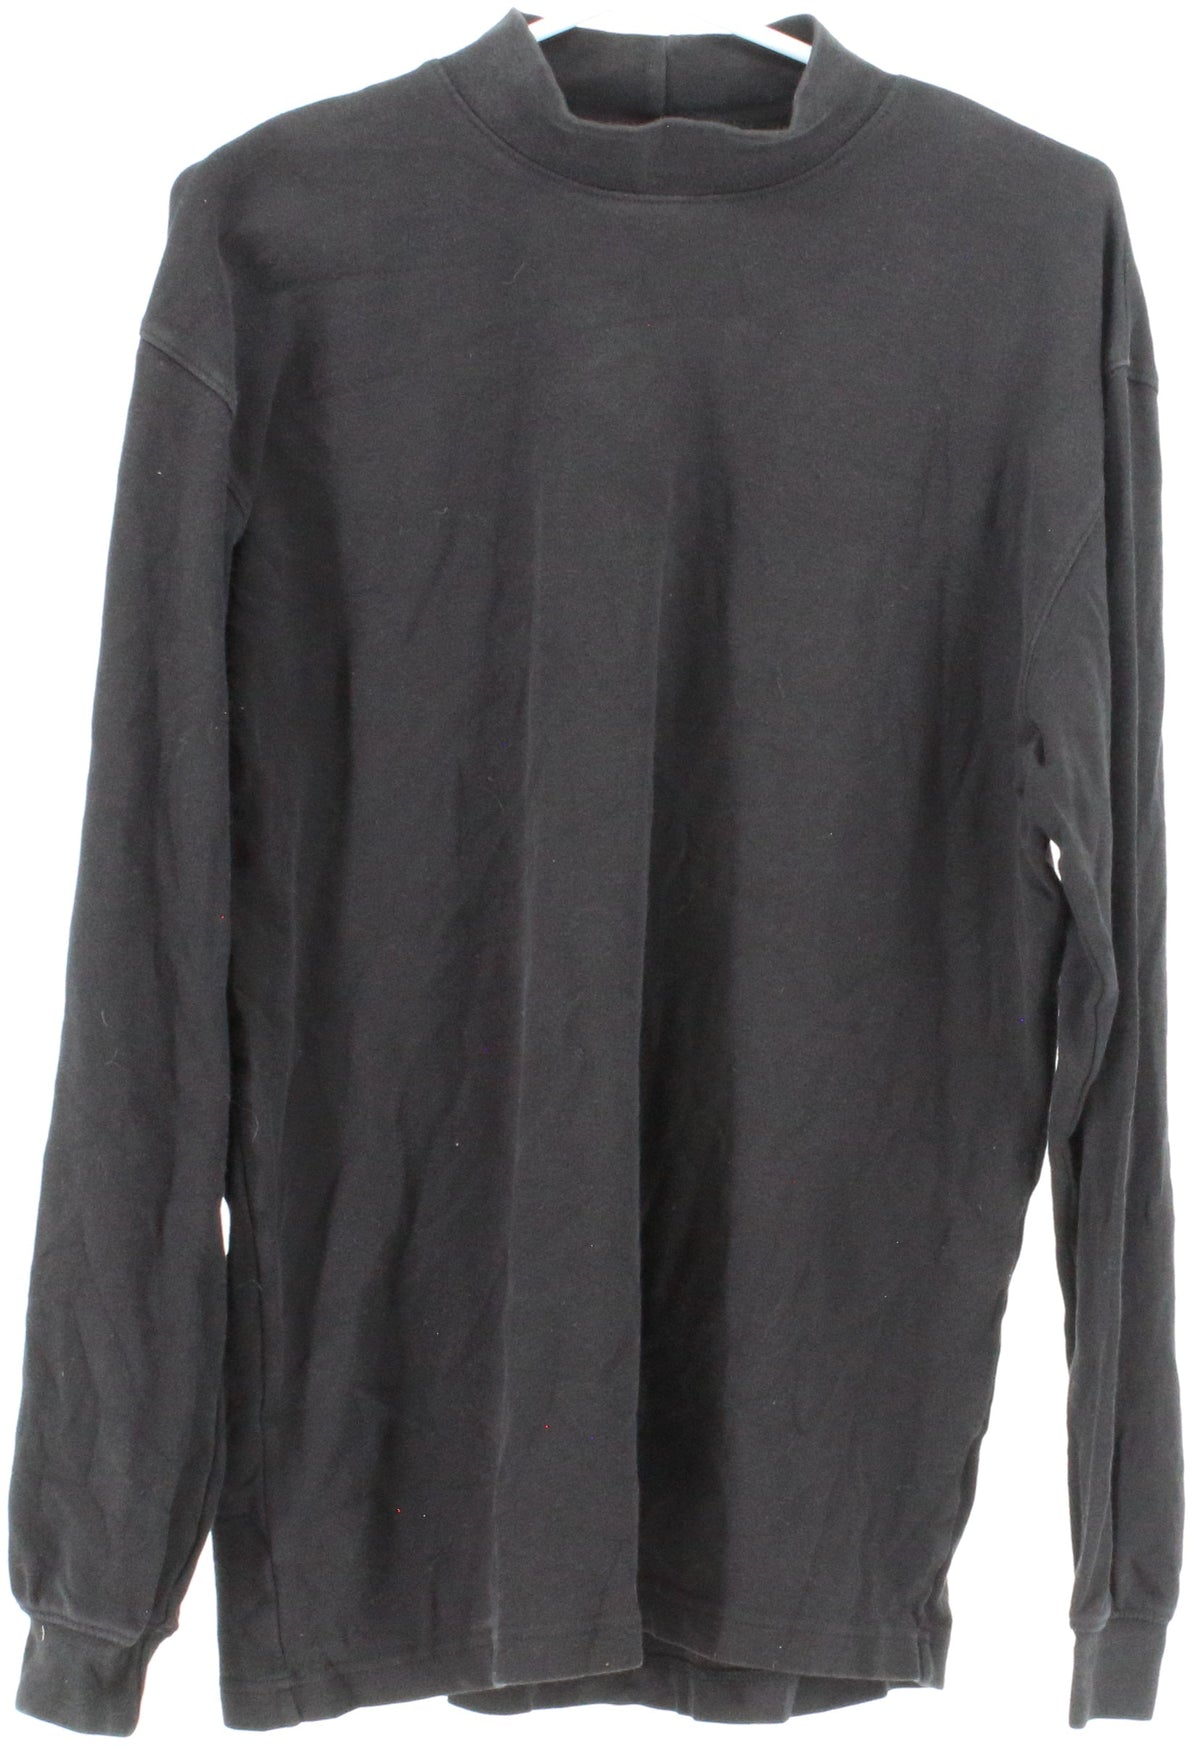 St John's Bay Black Mock Neck Long Sleeved T-Shirt